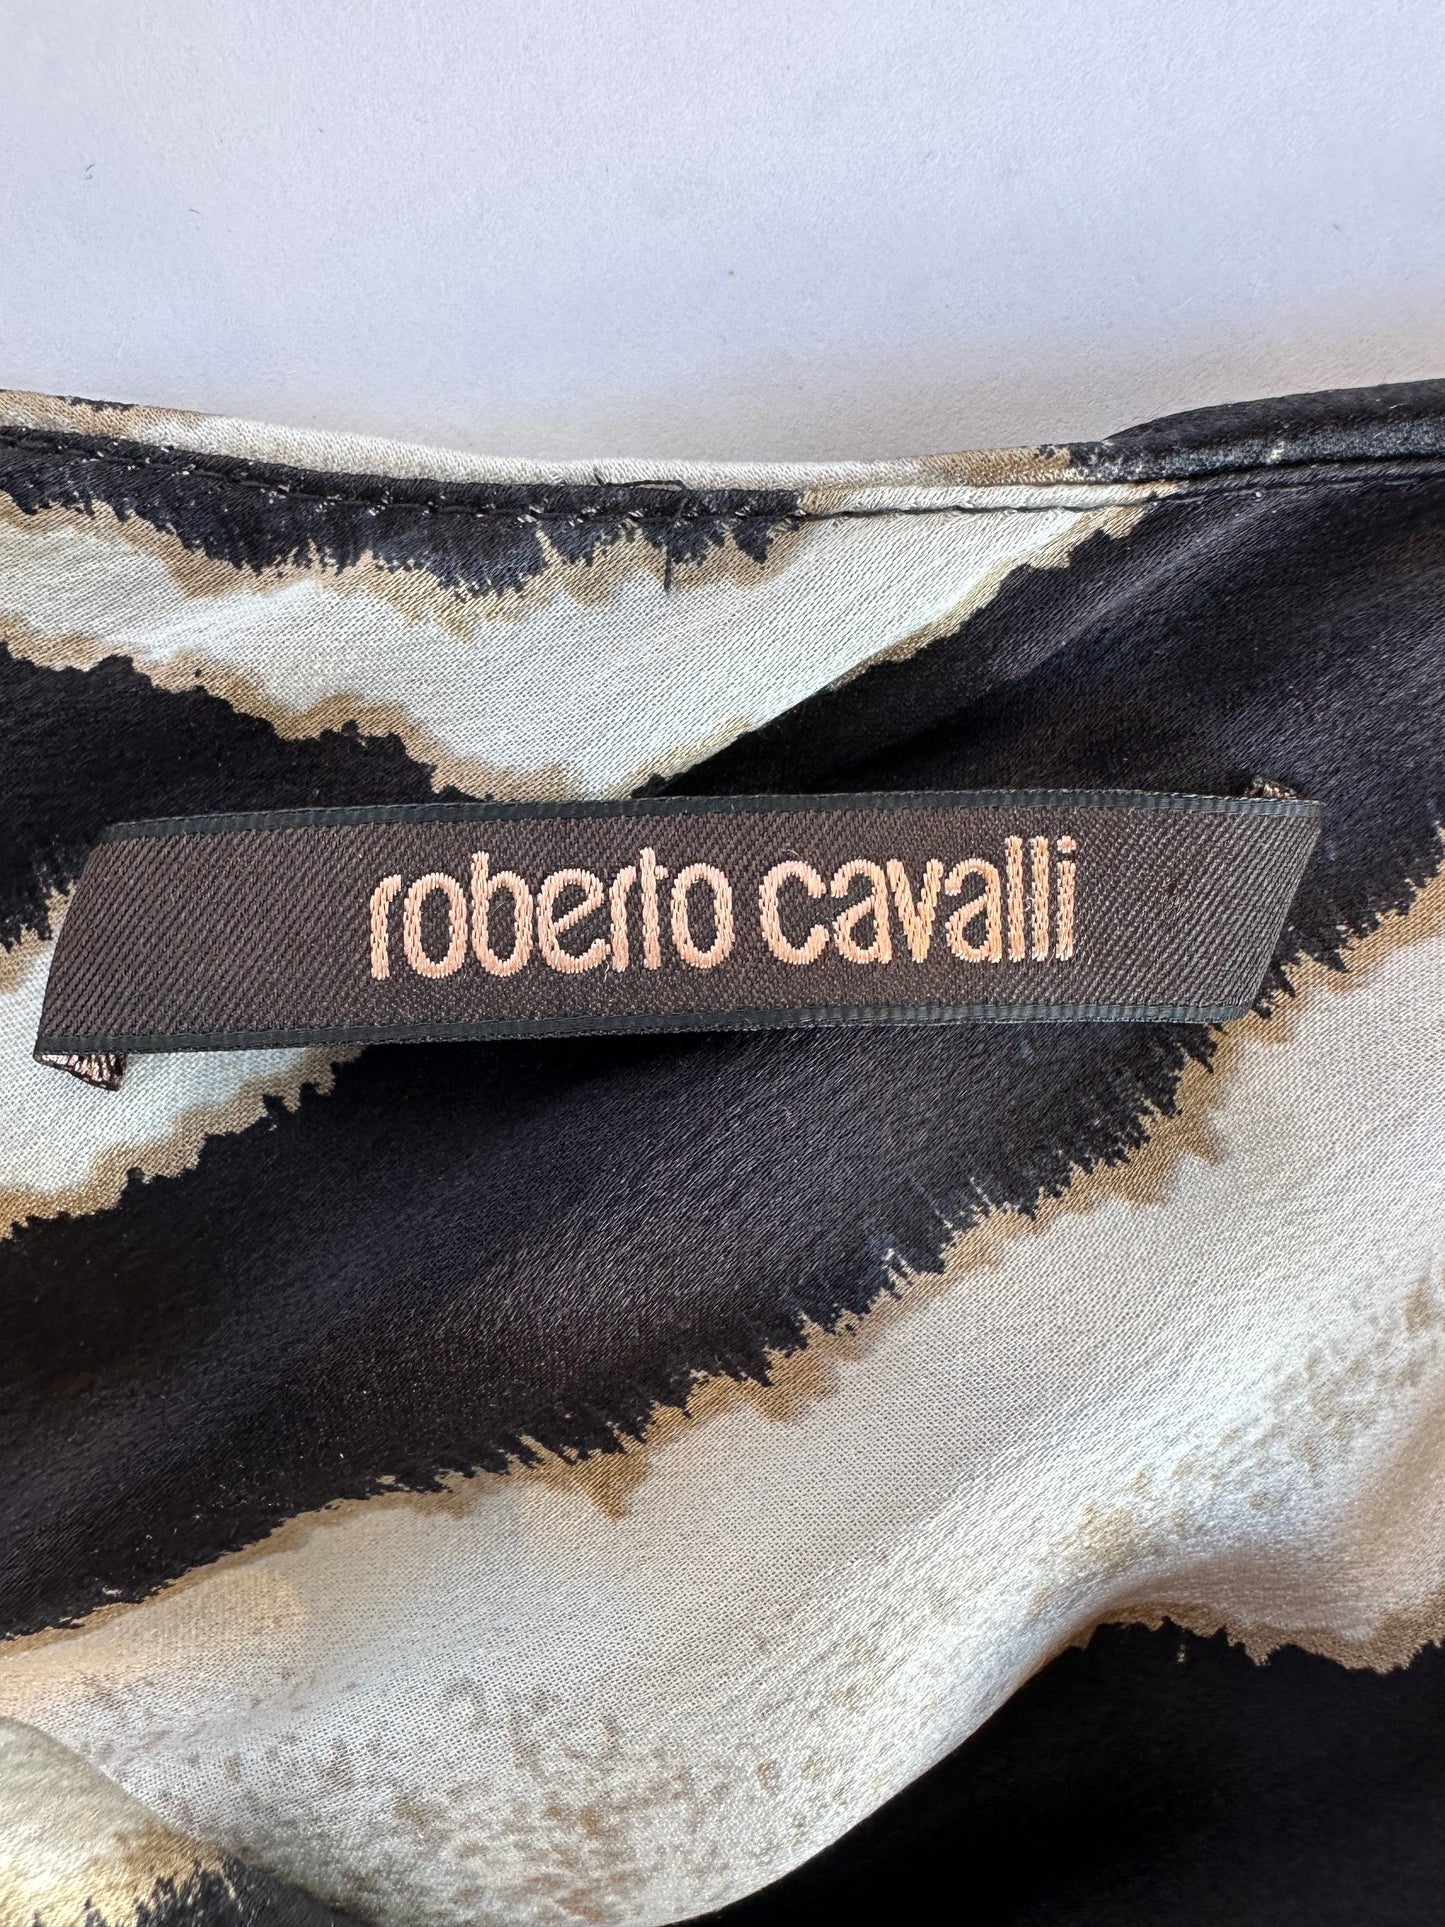 Roberto Cavalli Zebra Print Silk Maxi Dress Size IT38